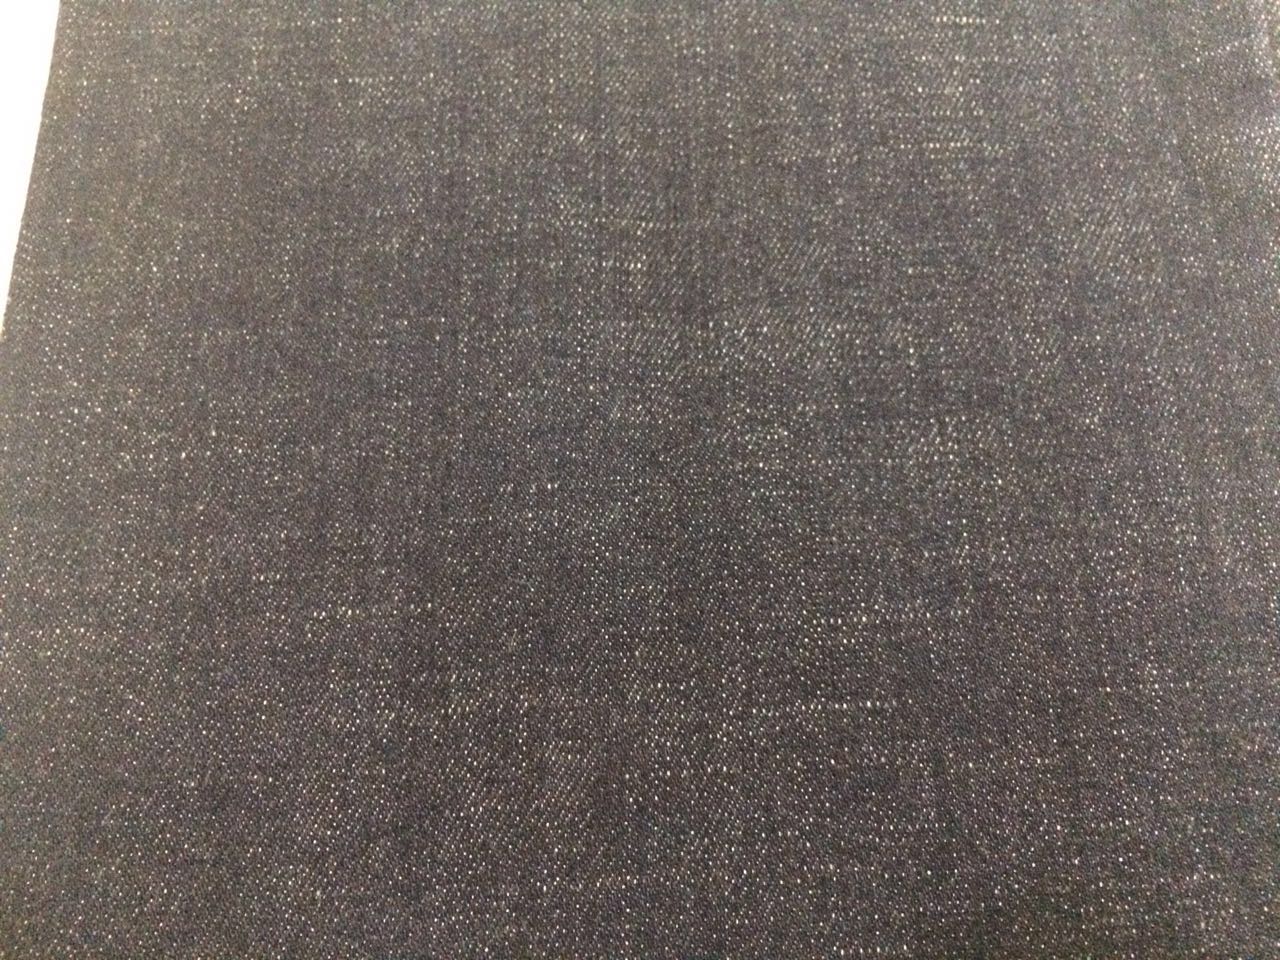 vải jean cotton giá rẻ khổ 1m6 , đa dạng mẫu mã phong phú - 7